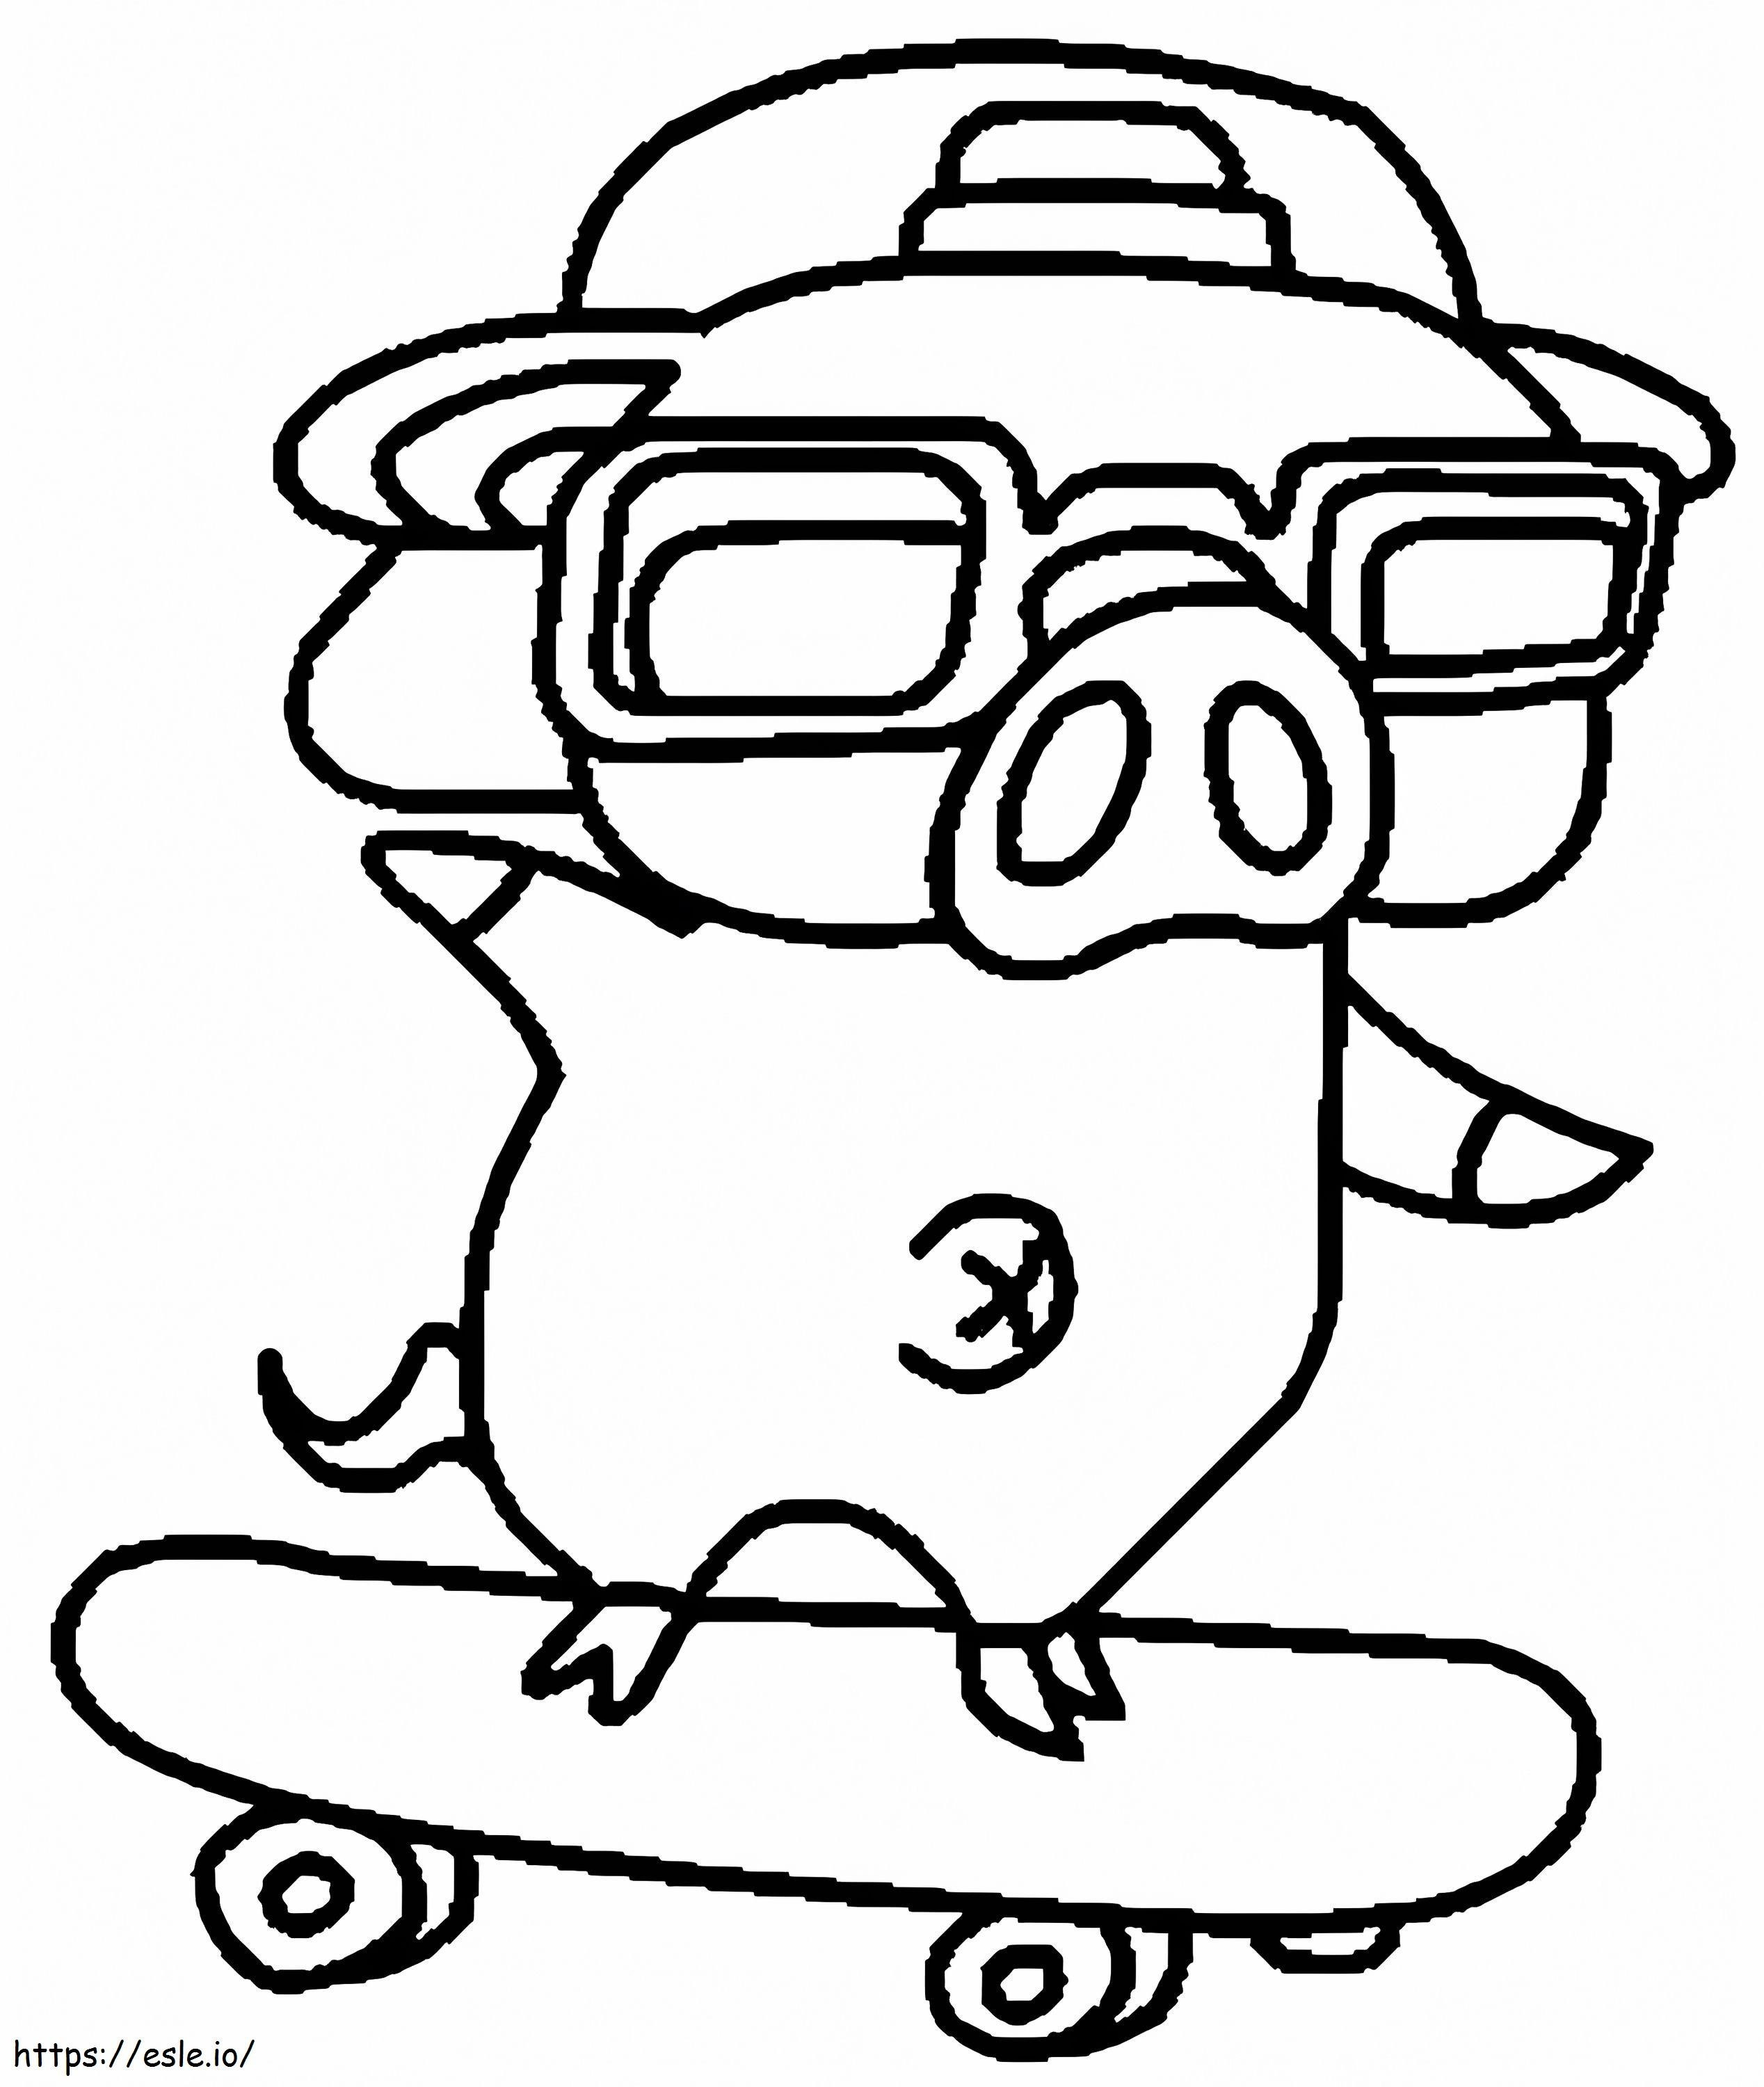 Un porc cu skateboard de colorat